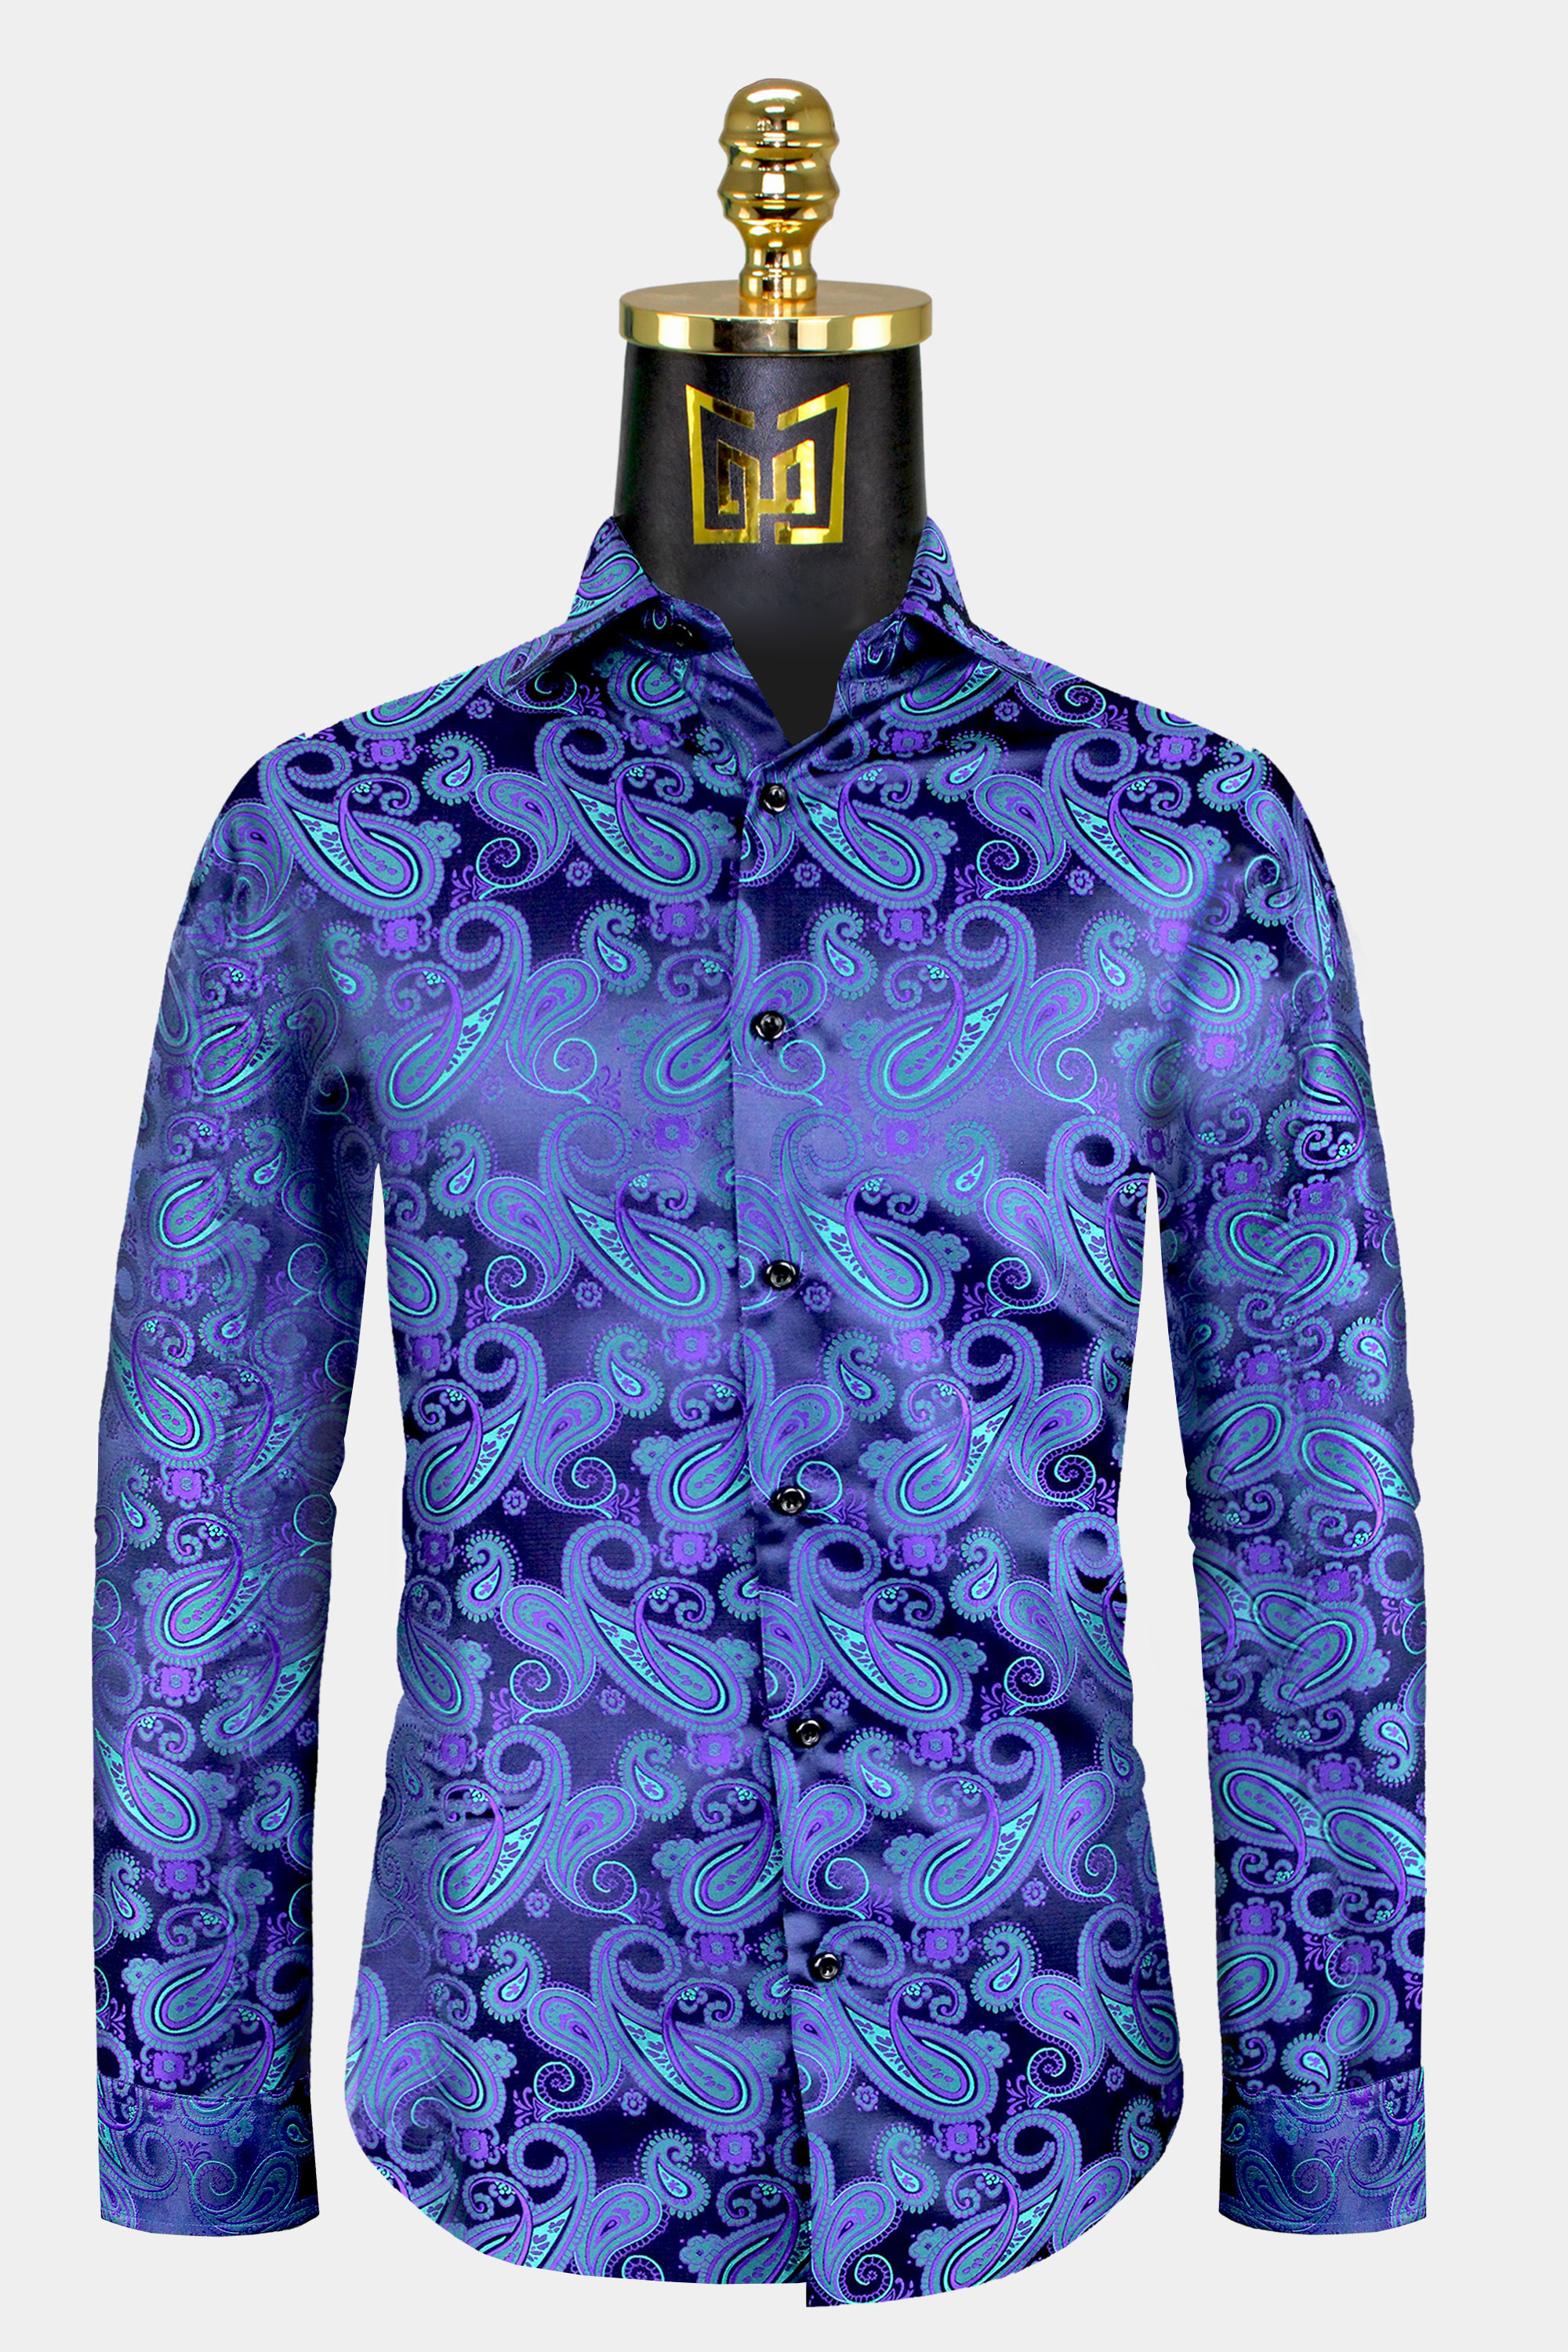 Mens-Paisley-Purple-and-Turquoise-Shirt-Dress-Shirt-from-Gentlemansguru.com